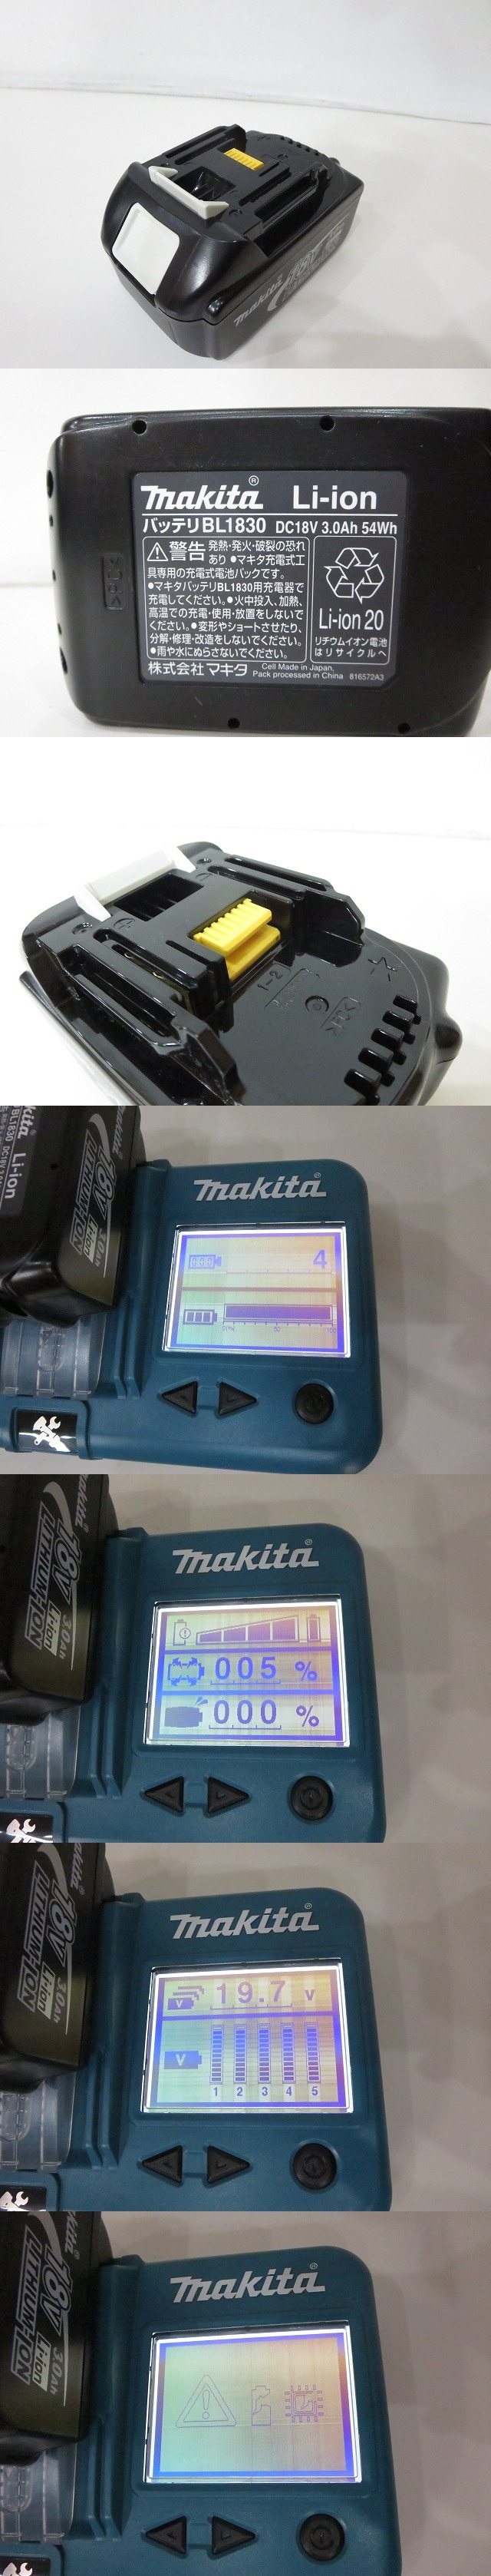 定番大人気makita [マキタ] 100mm充電式ディスクグラインダ [GA402DRF] 18V 3.0Ah 2013年 電動工具 ※充電4回 バッテリー劣化有/ジャンク品扱い 4362 ディスクグラインダー